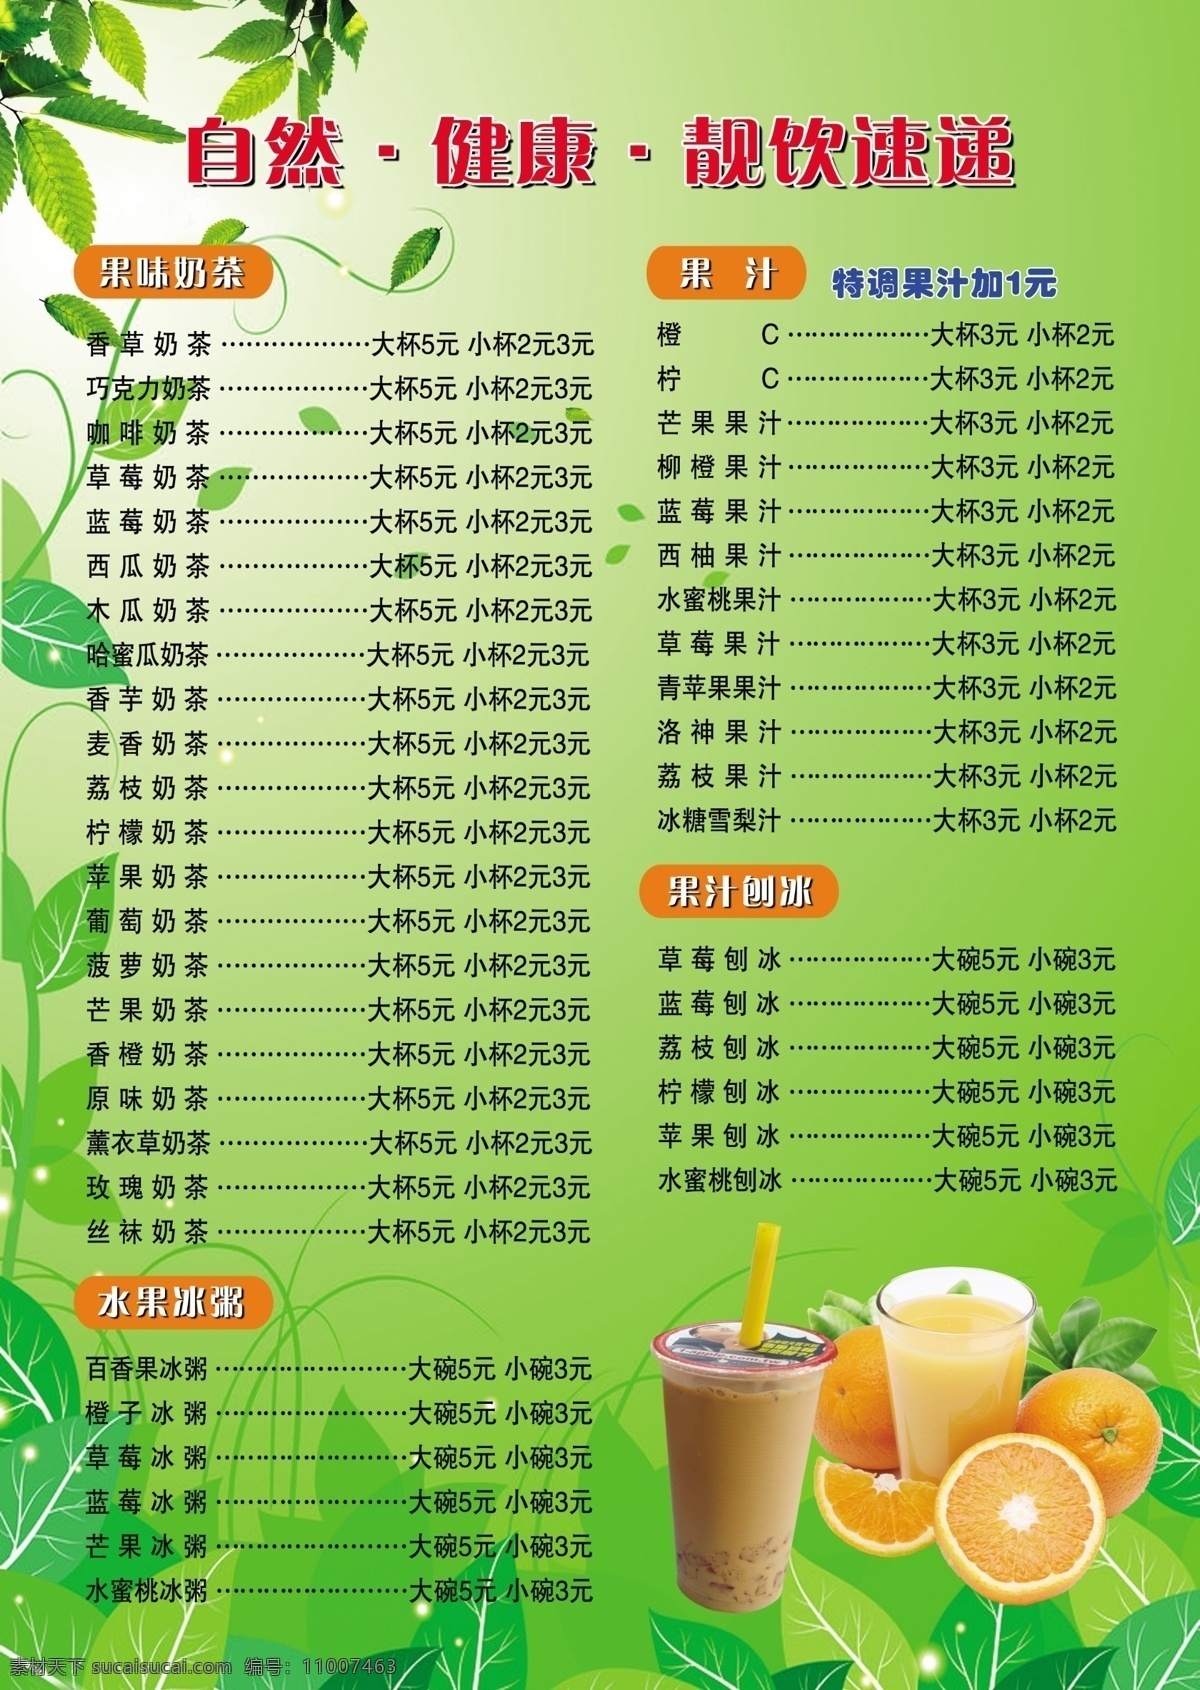 价格单 奶茶 价格表 背景 水果 dm宣传单 广告设计模板 源文件